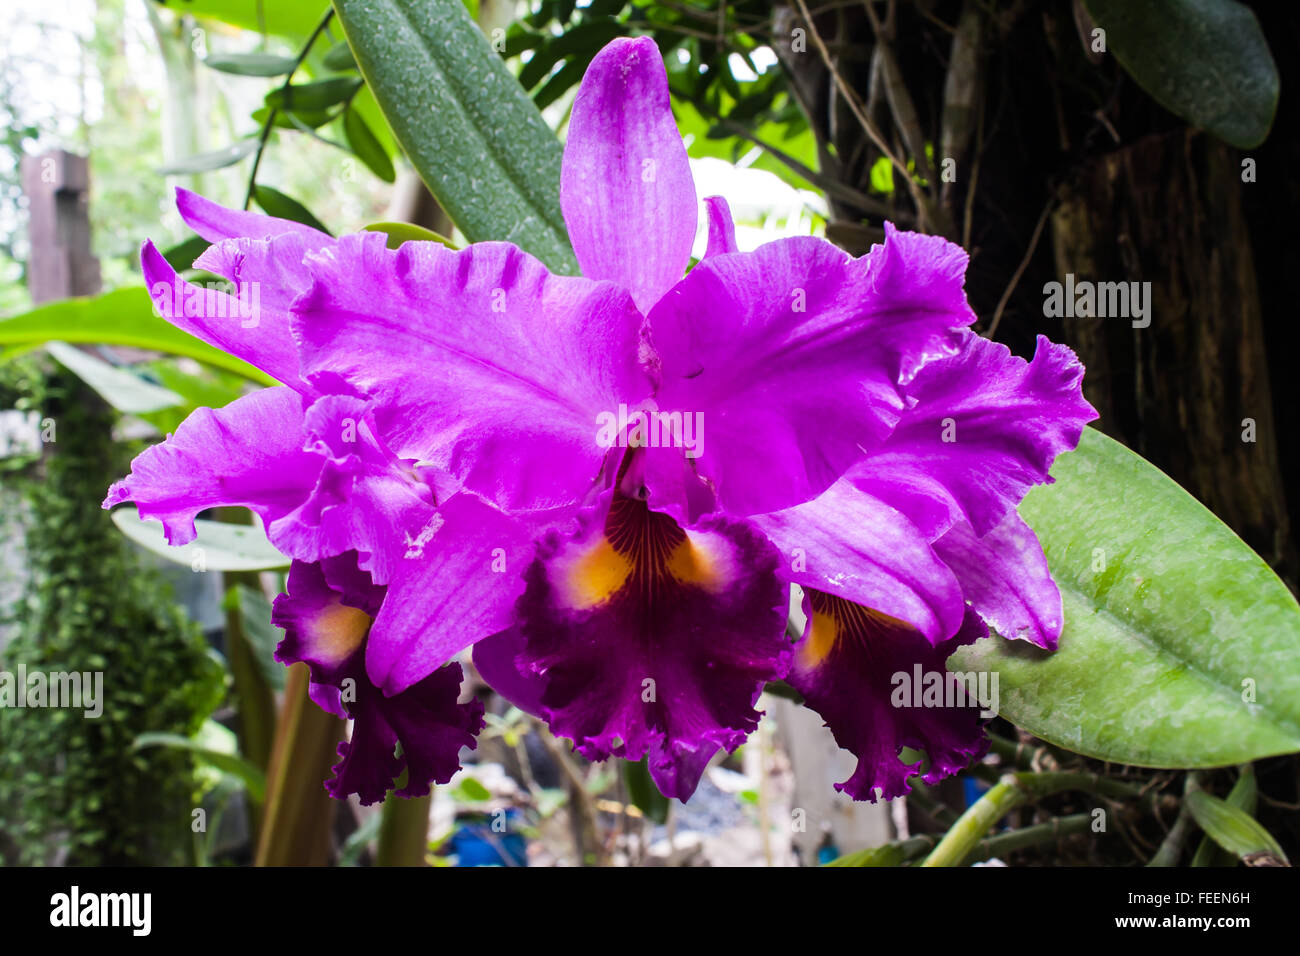 Belle orchidée Cattleya mauve (Orchidaceae) dans un parc Banque D'Images